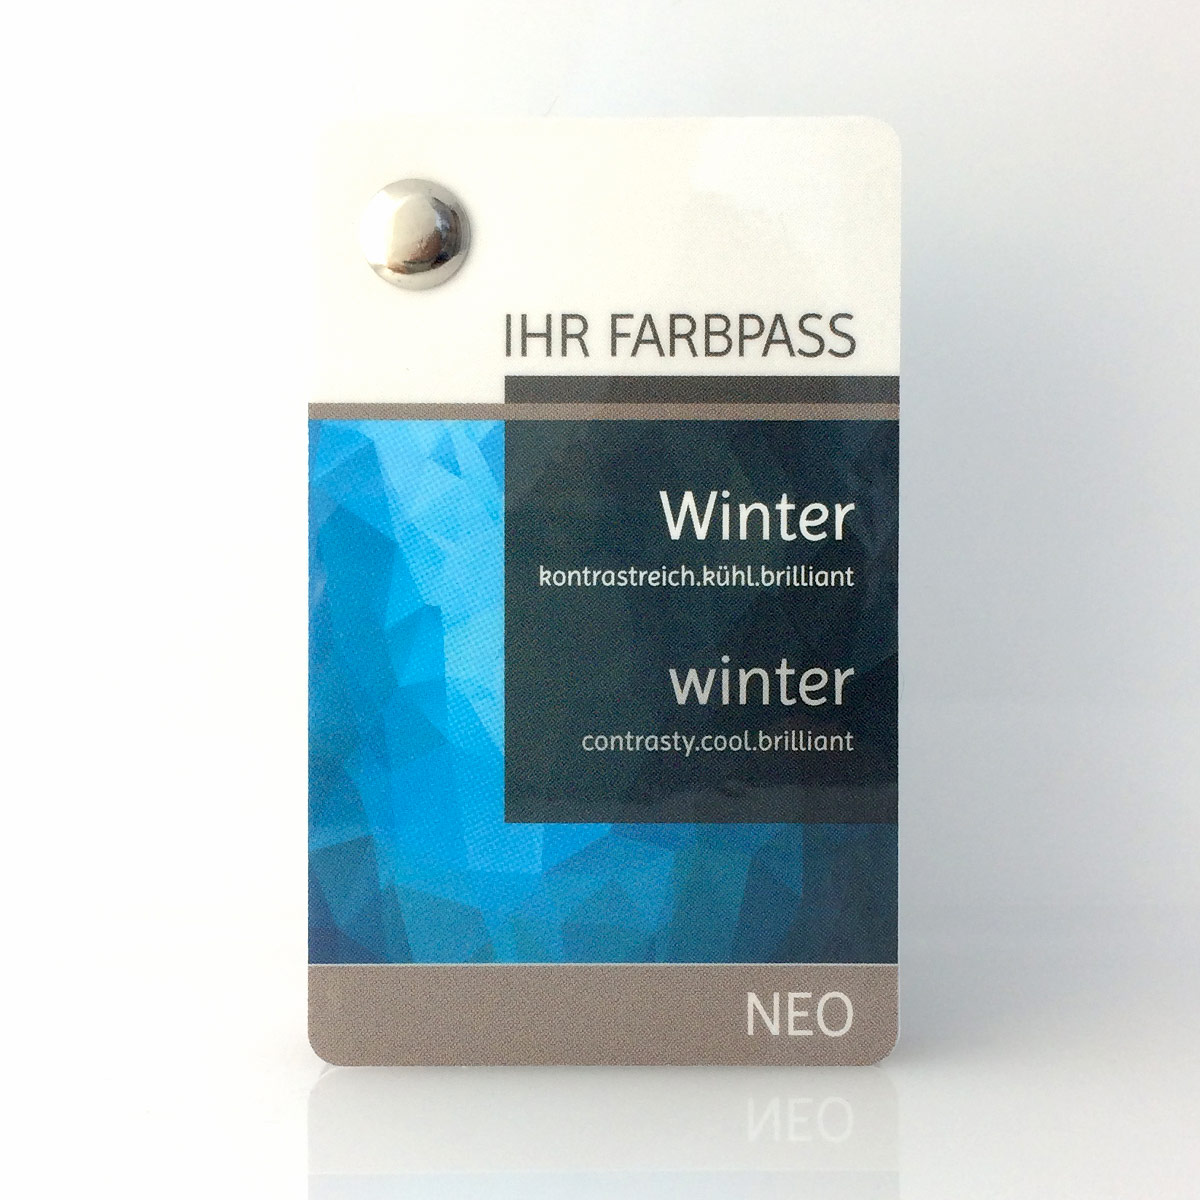 Farbpass Wintertyp zur Farbberatung - Neo | Komood